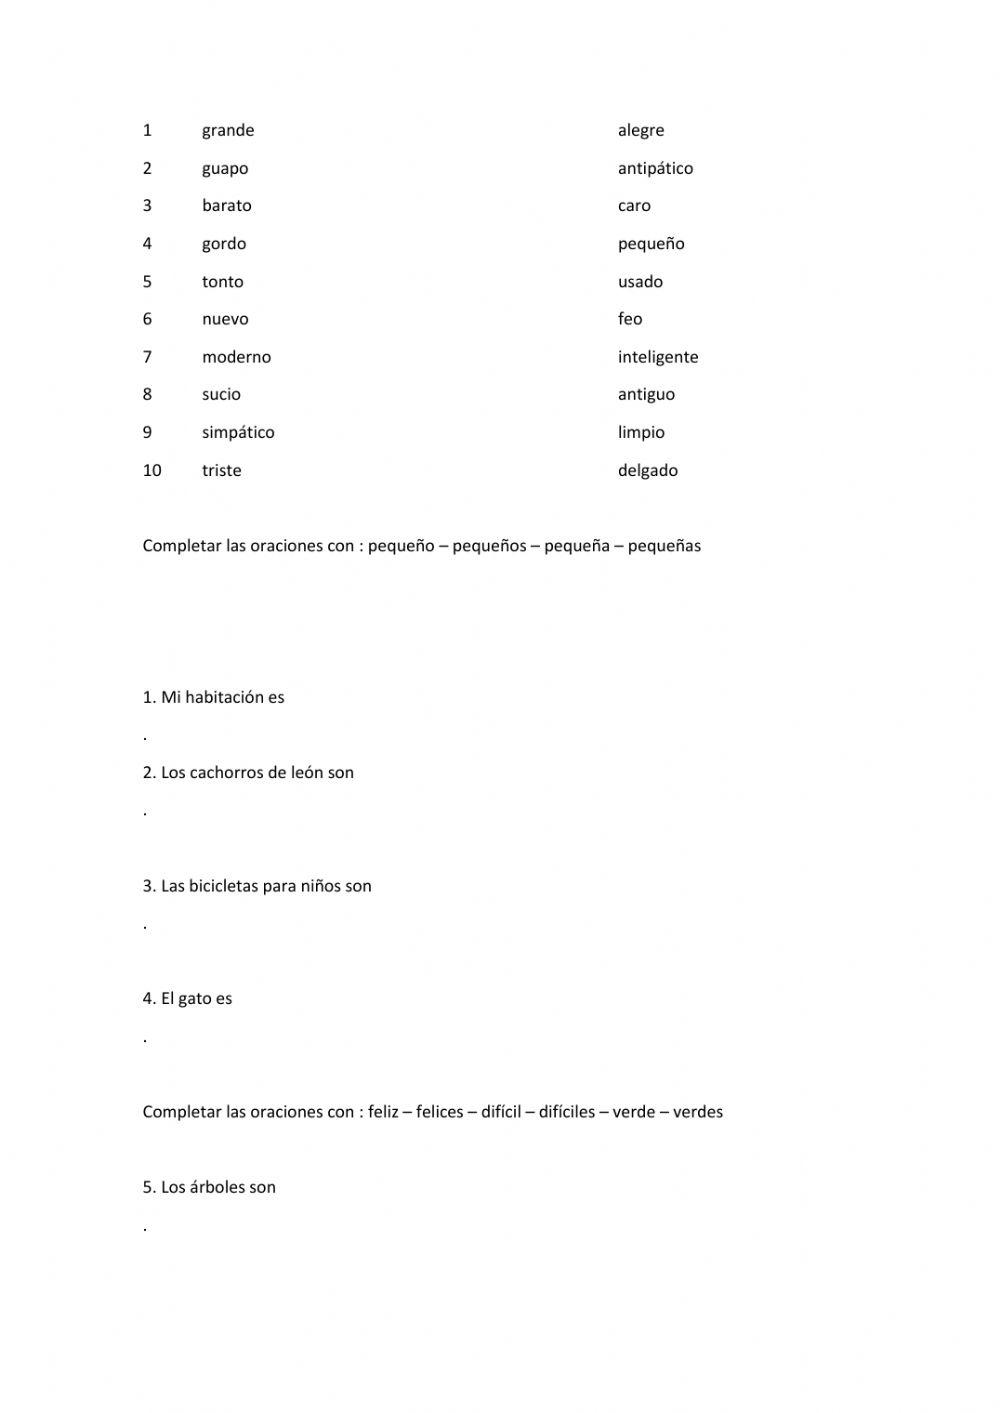 Adjetivos en español